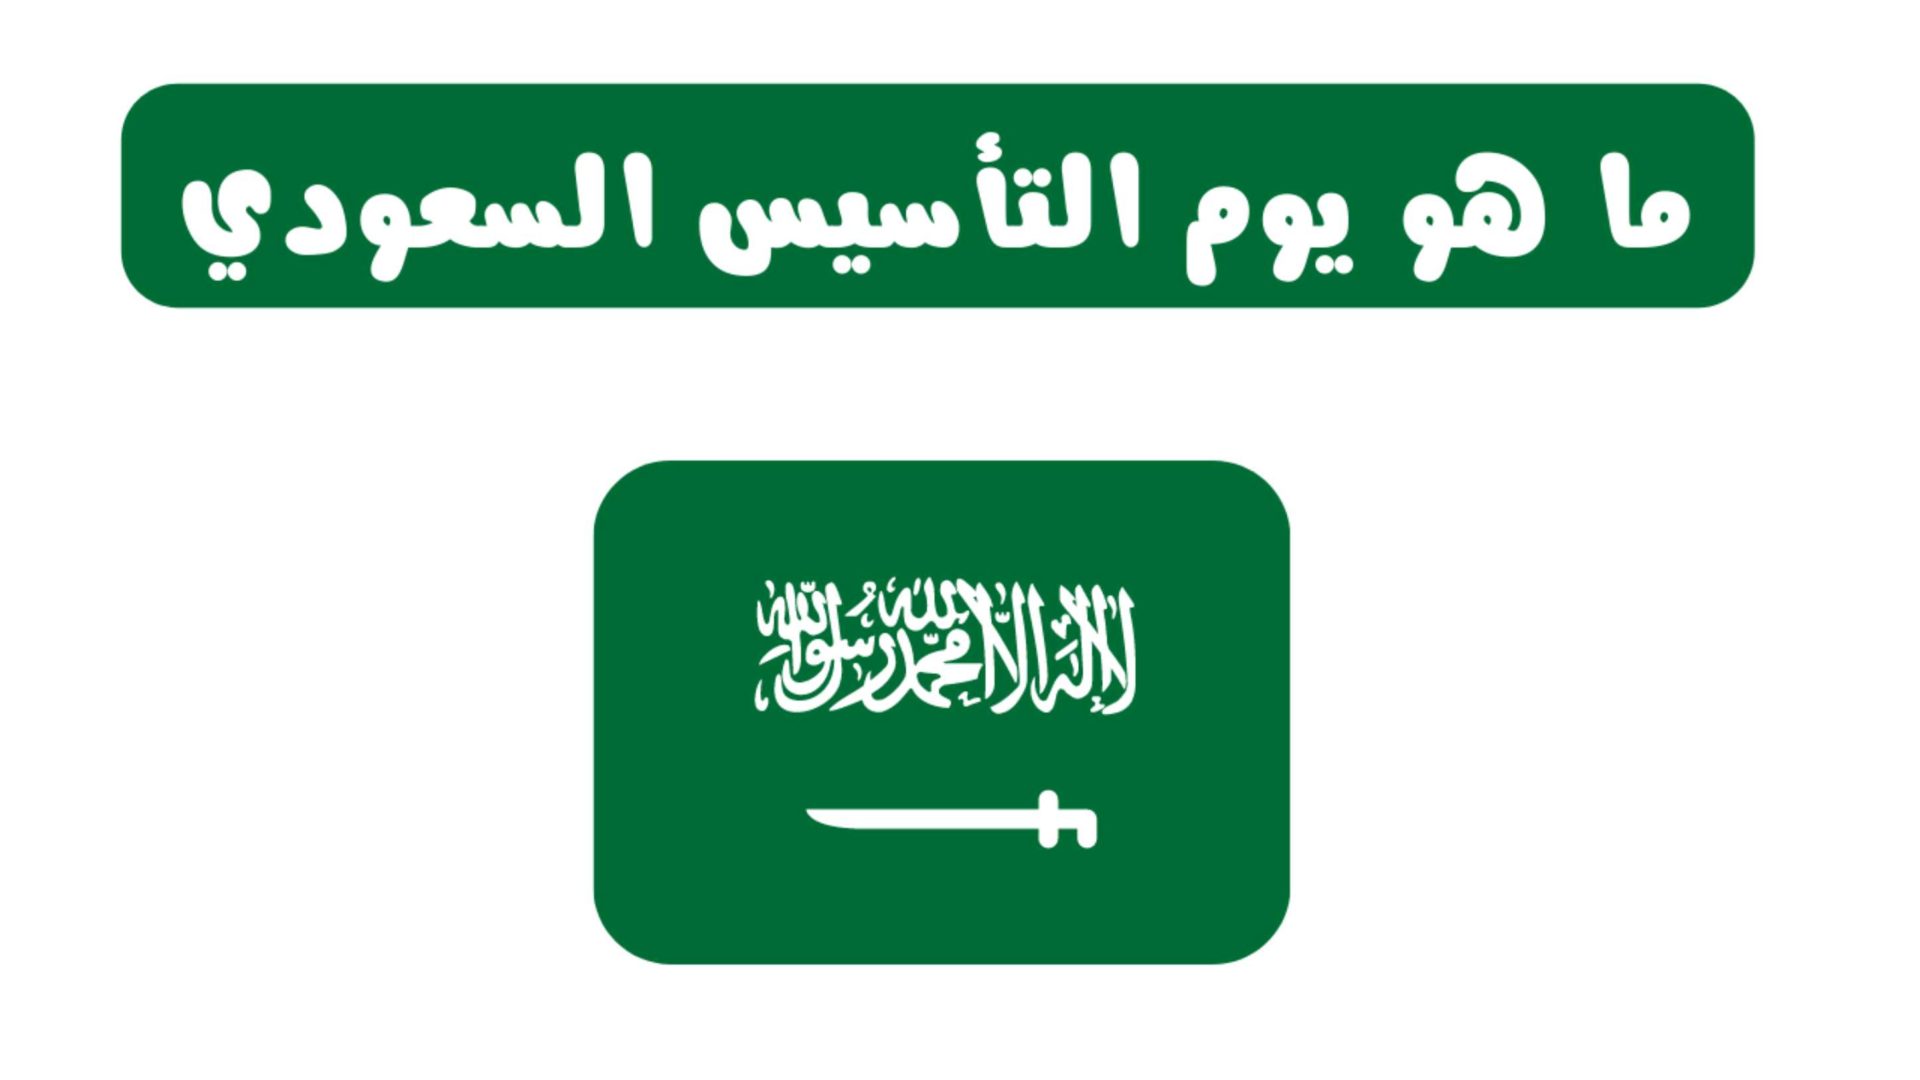 يوم التأسيس اجازة رسمية احياءا لذكرى تأسيس الدولة السعودية الأولى 2022